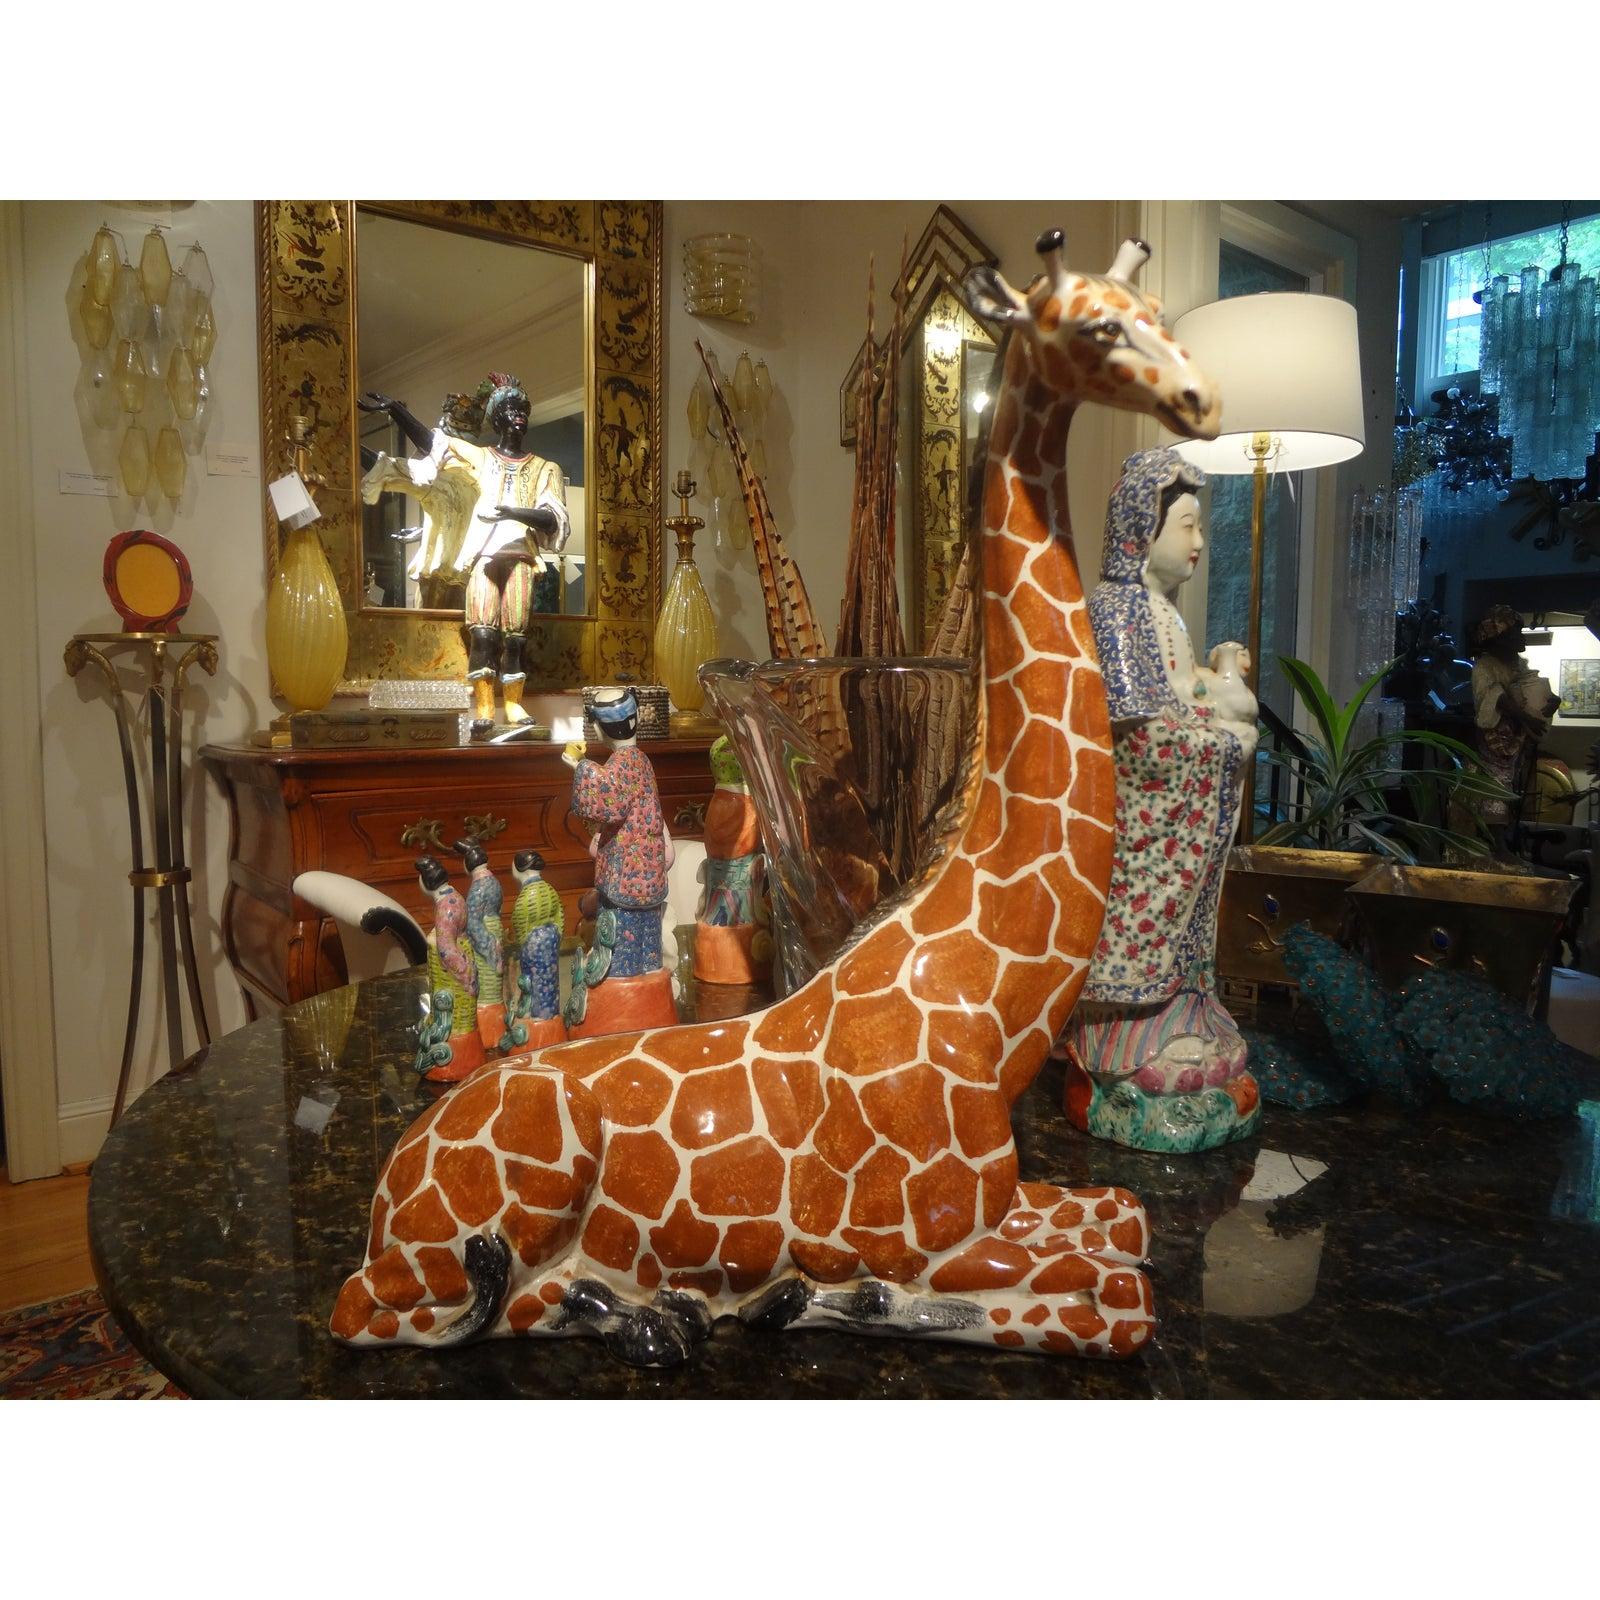 Figurine de girafe en terre cuite vernissée italienne.
Magnifique figure ou sculpture de girafe en terre cuite vernissée italienne du milieu du siècle dernier. Cette superbe pièce Hollywood Regency est estampillée Italie et est en bon état.